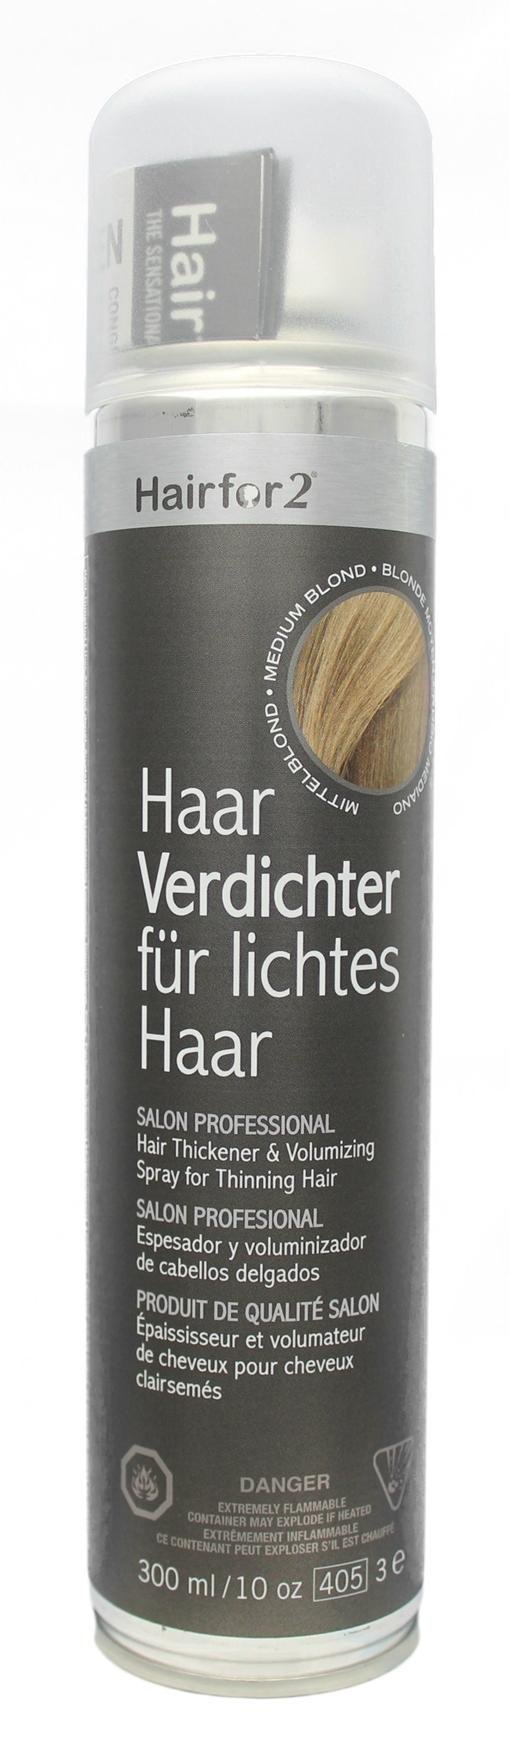 Hairfor2 Haarverdichtungsspray gegen lichtes Haar | Haarpuder | Streuhaar | Haarauffüller | Haarausfall | Haarverdichter (300ml, Mittelblond)